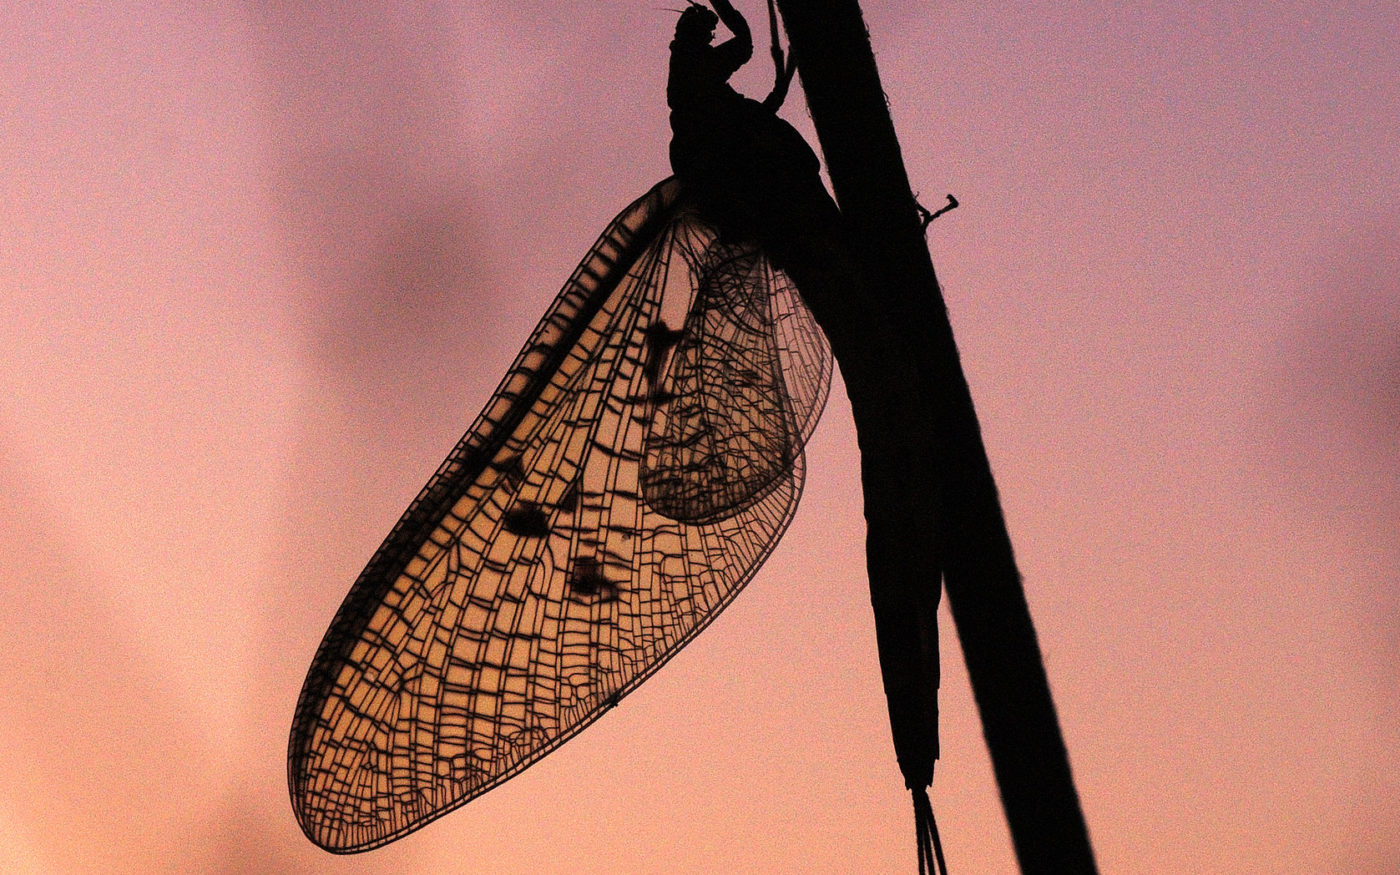 Mayfly at sunset